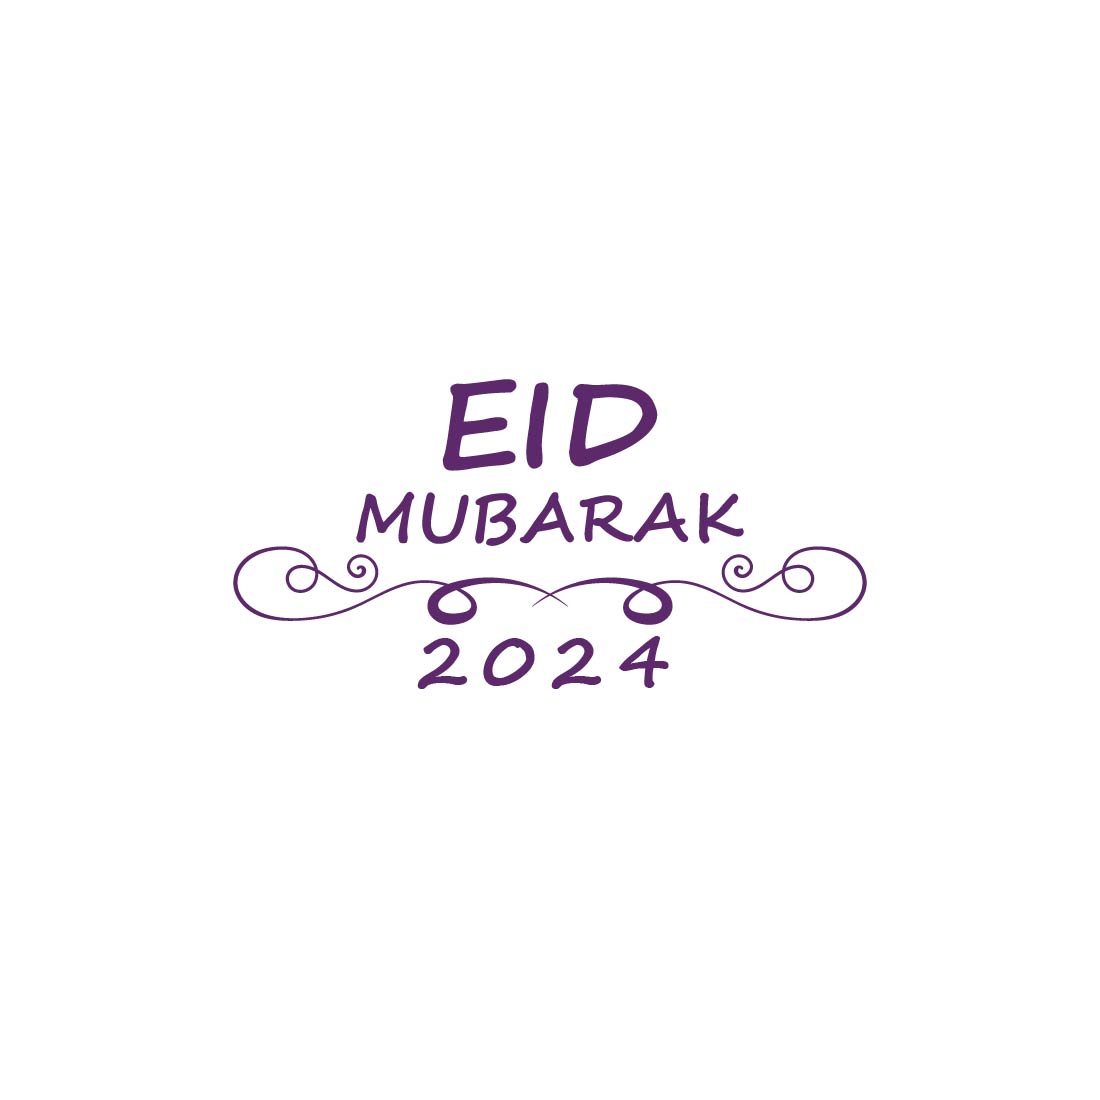 eid logo jpg 04 638